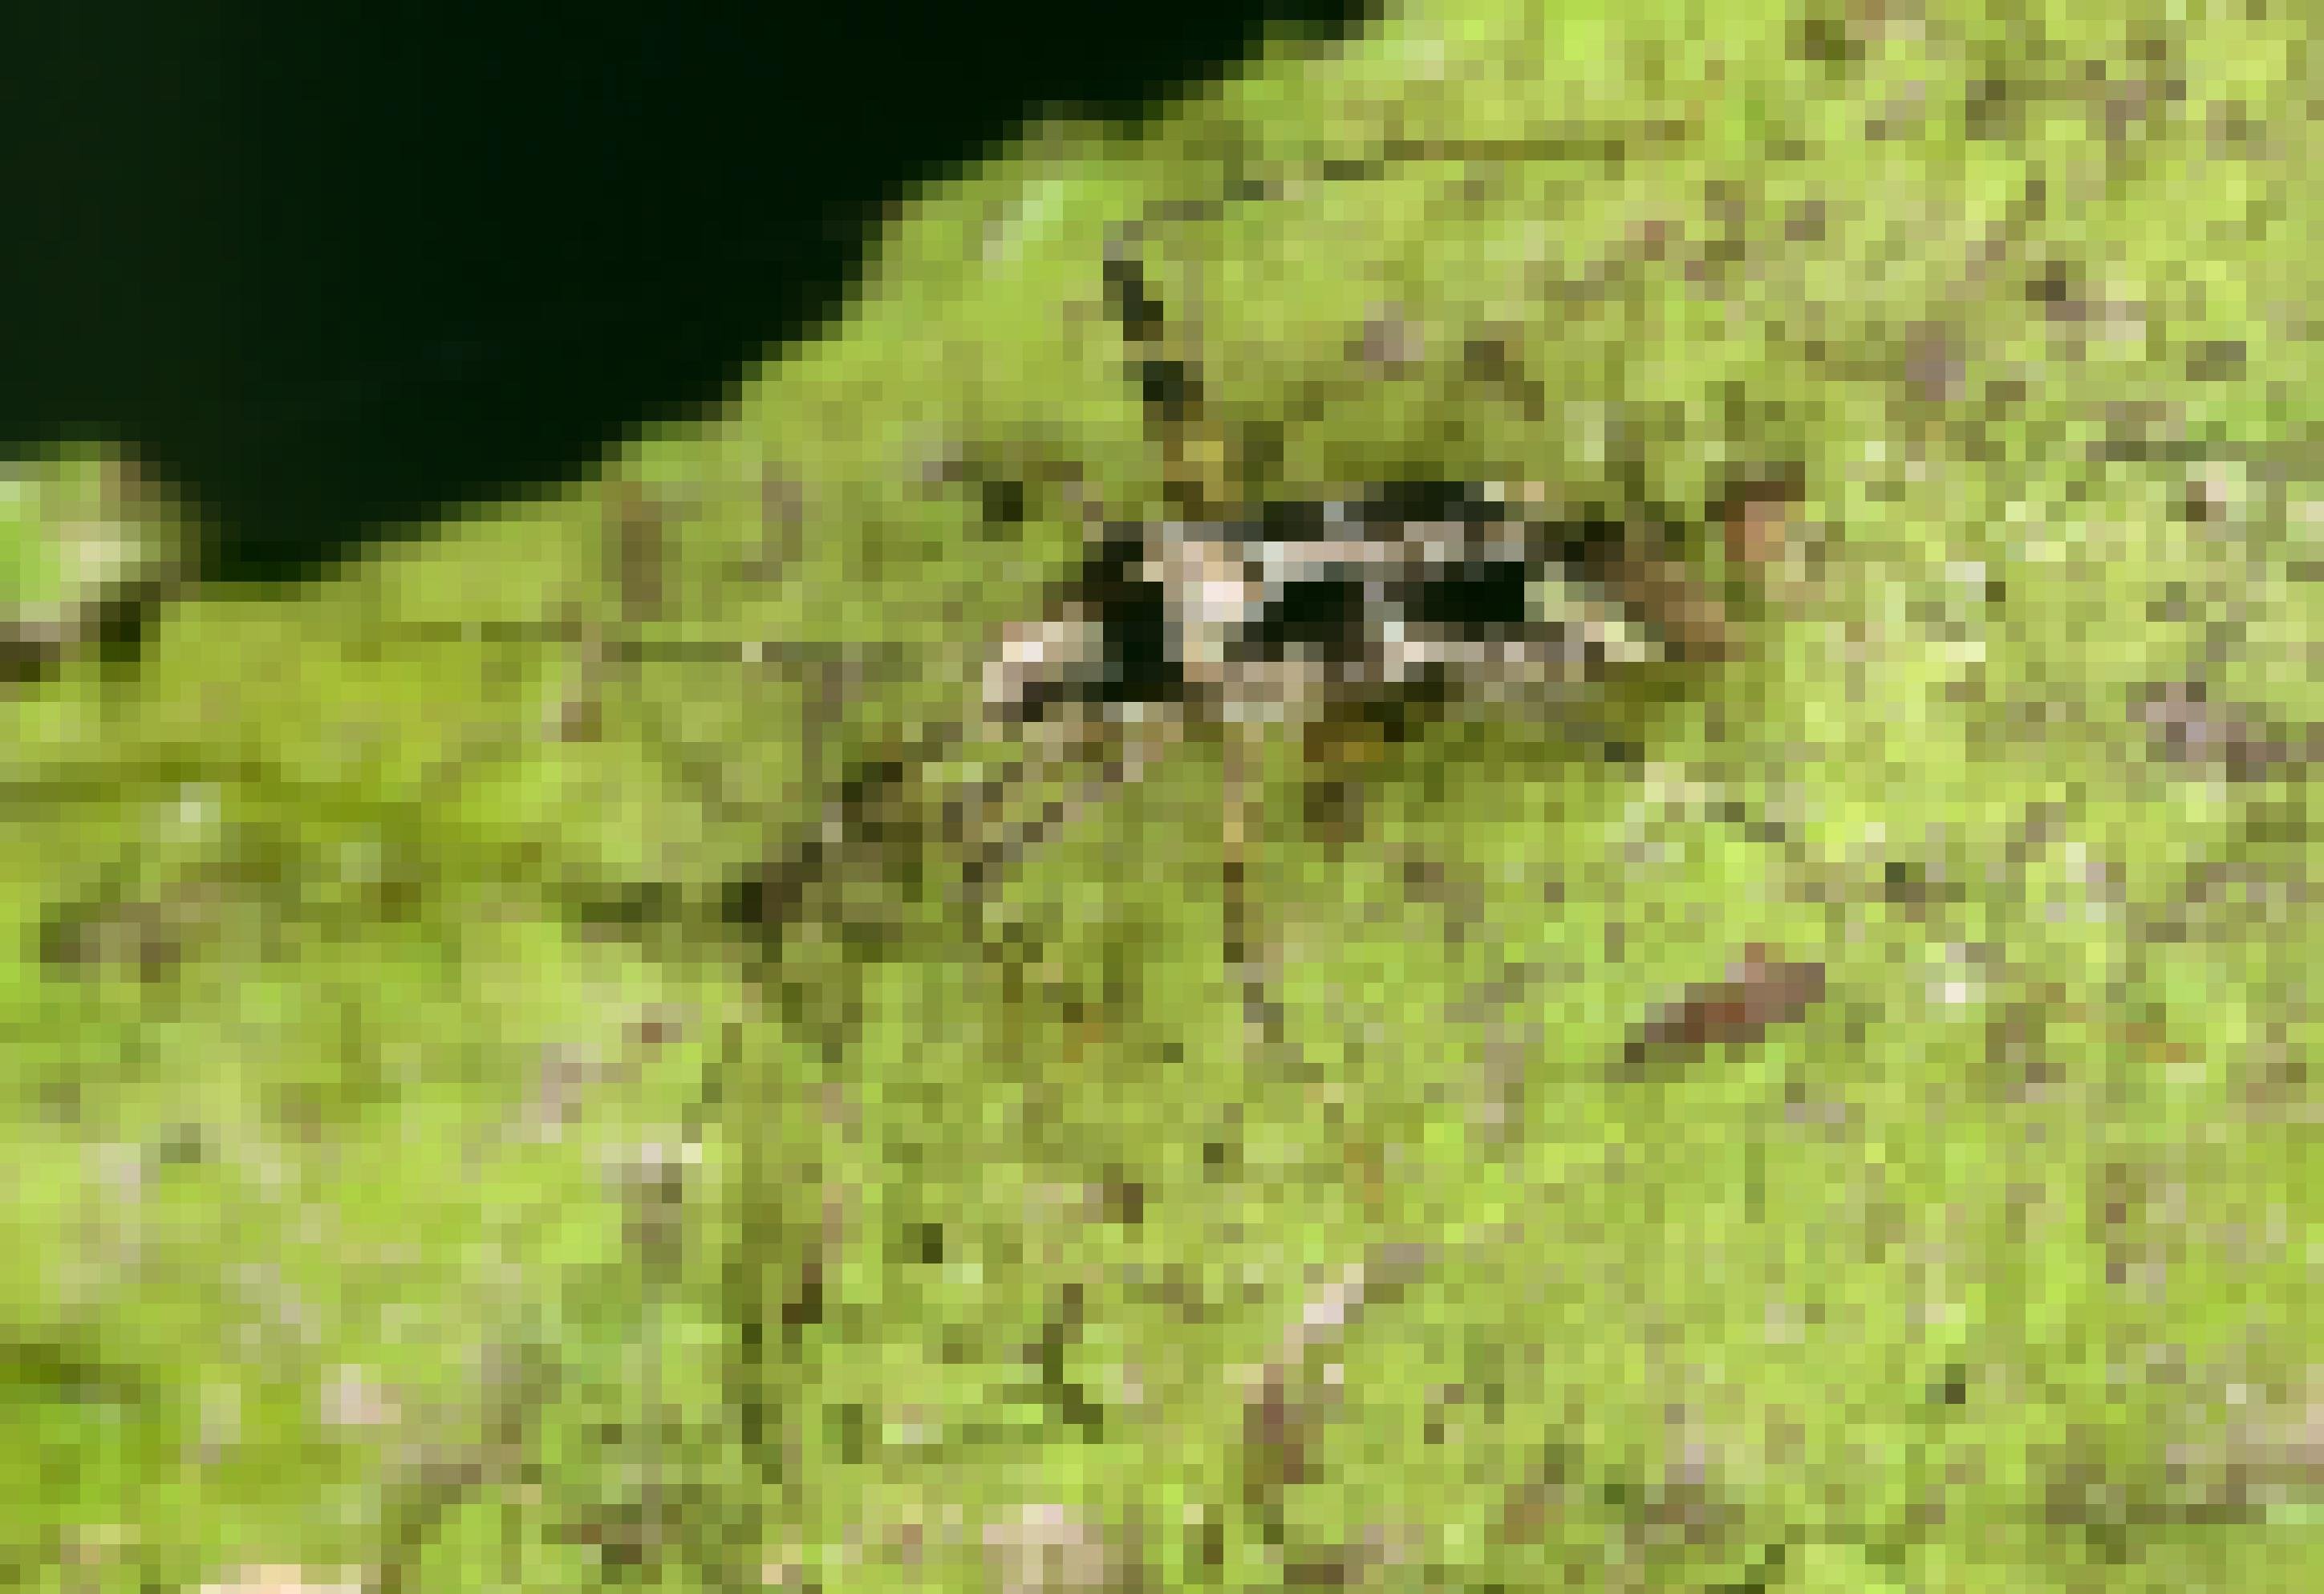 Ein schmales Insekt mit langen dünnen Beinen krabbelt über einen mit flechten bedeckten Ast. Es ist hellgrün-schwarzbraun gescheckt.